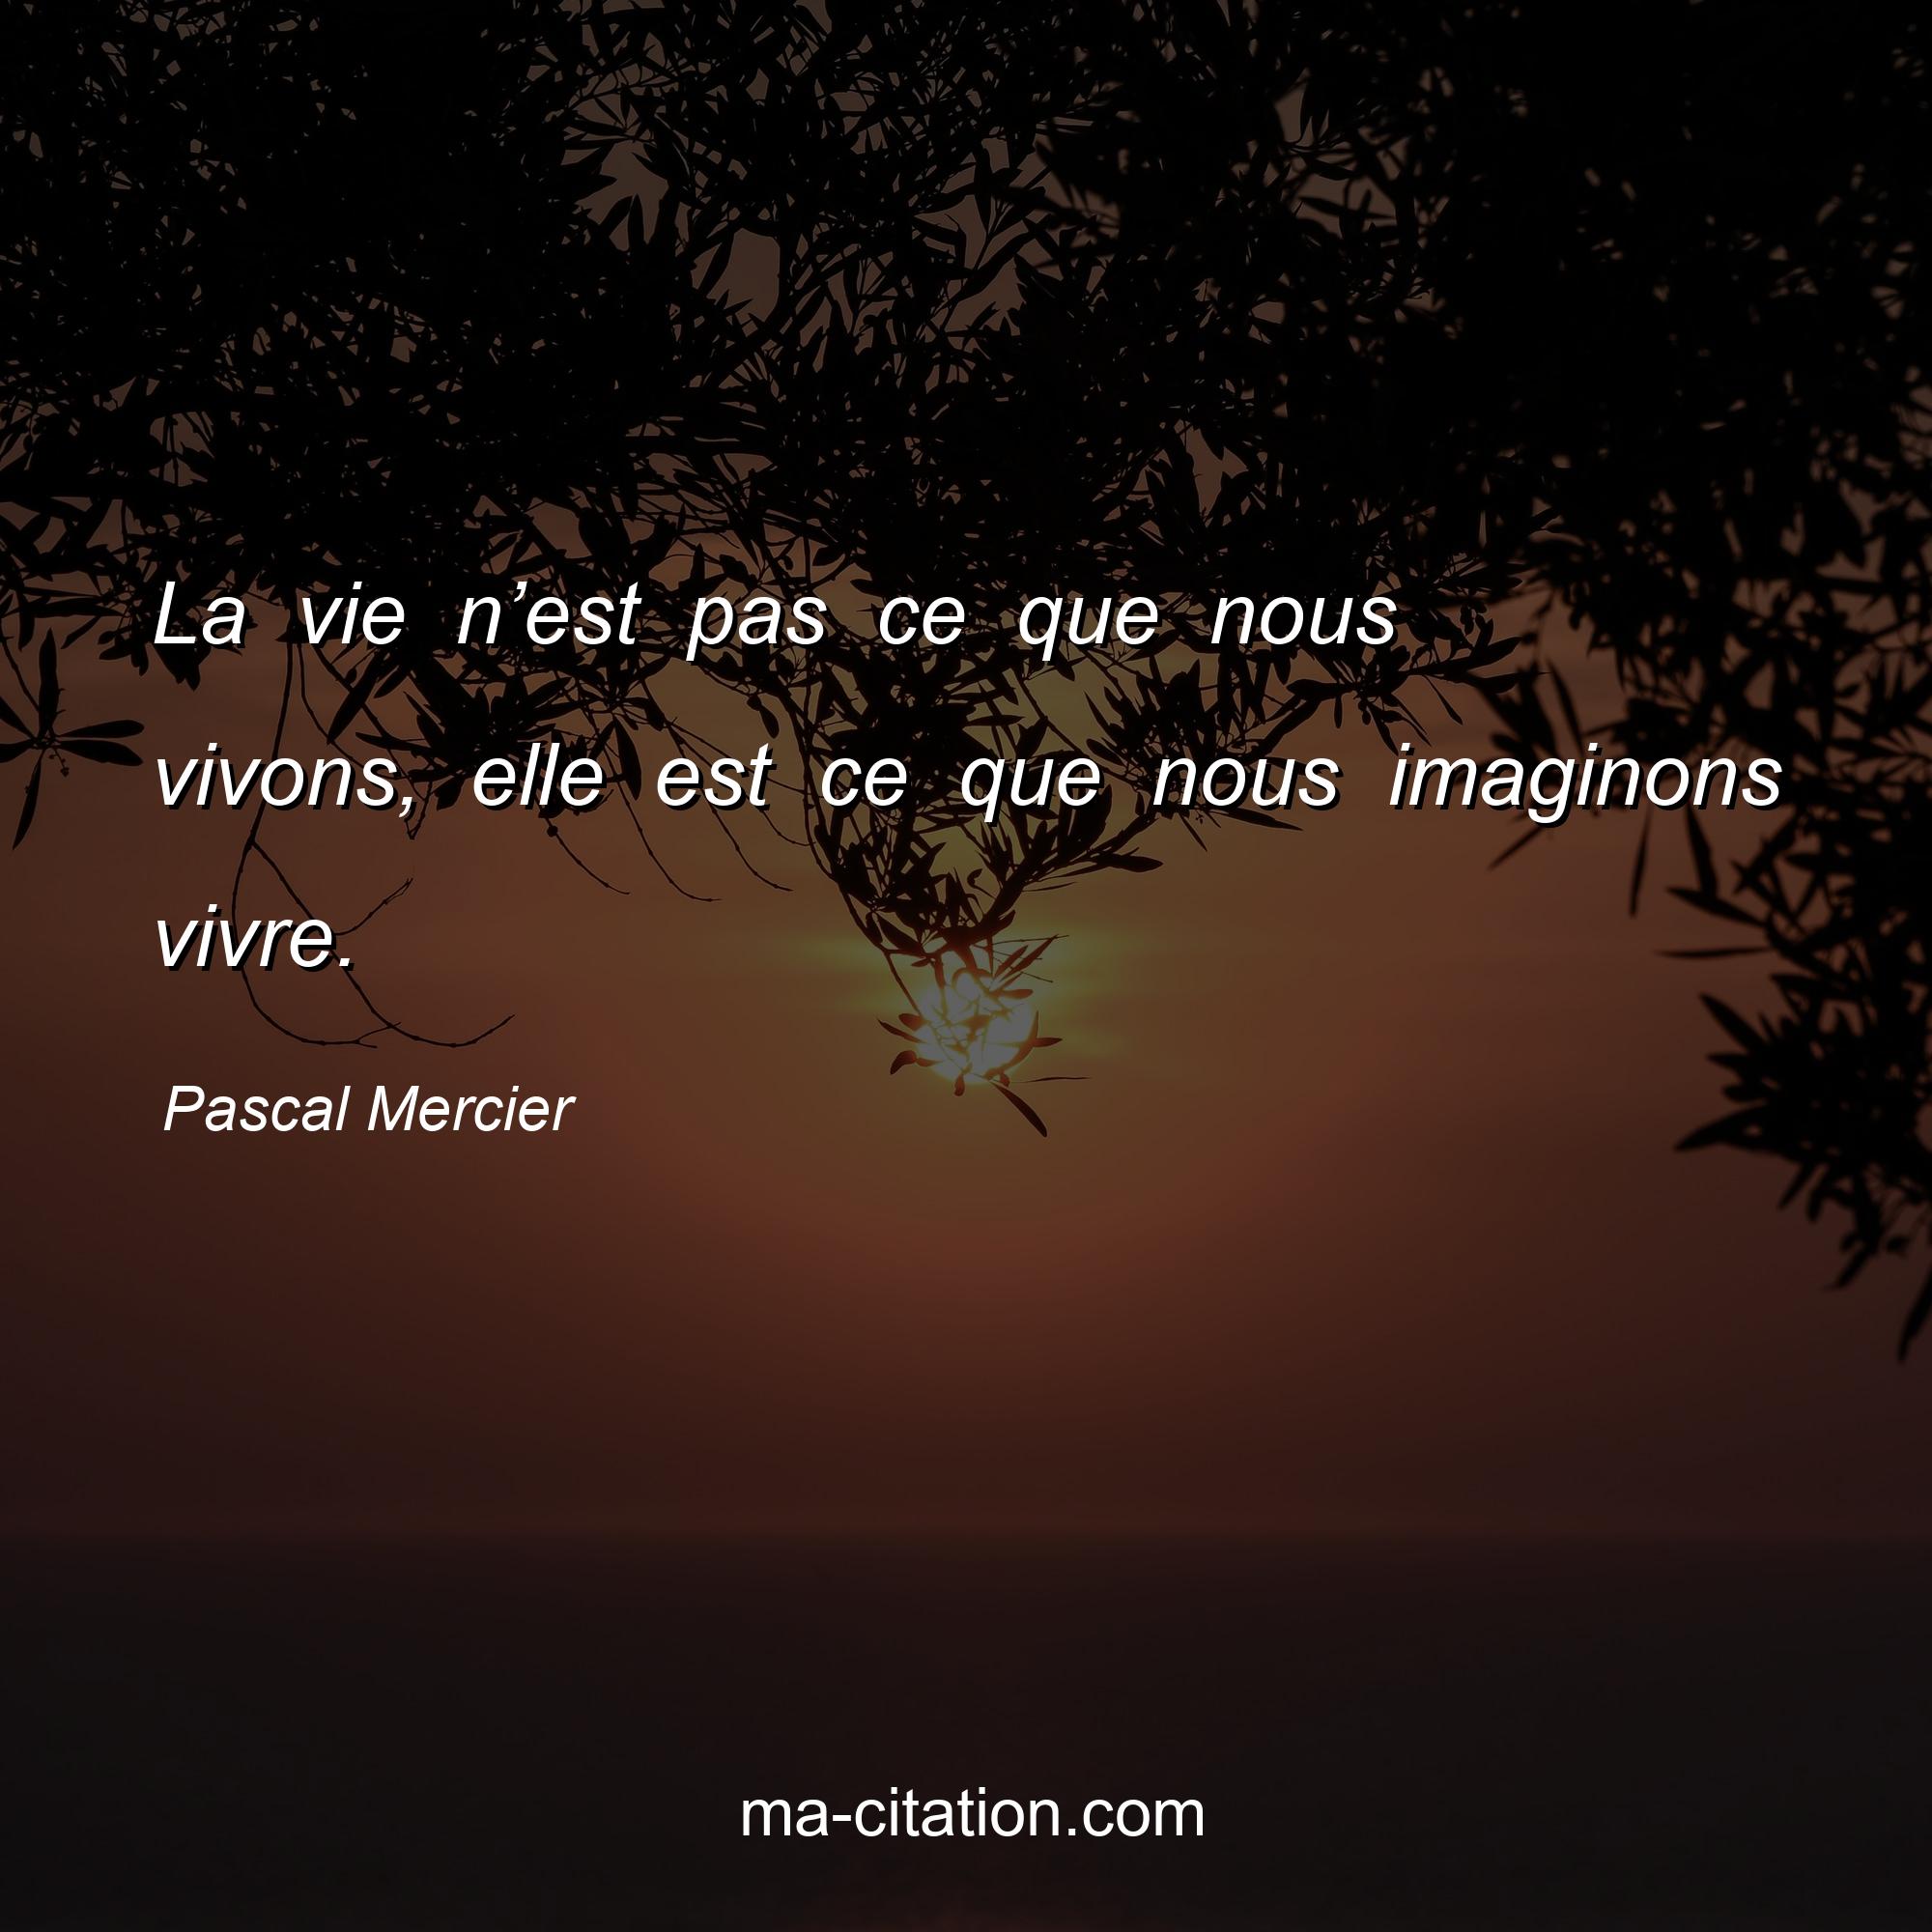 Pascal Mercier : La vie n’est pas ce que nous vivons, elle est ce que nous imaginons vivre.